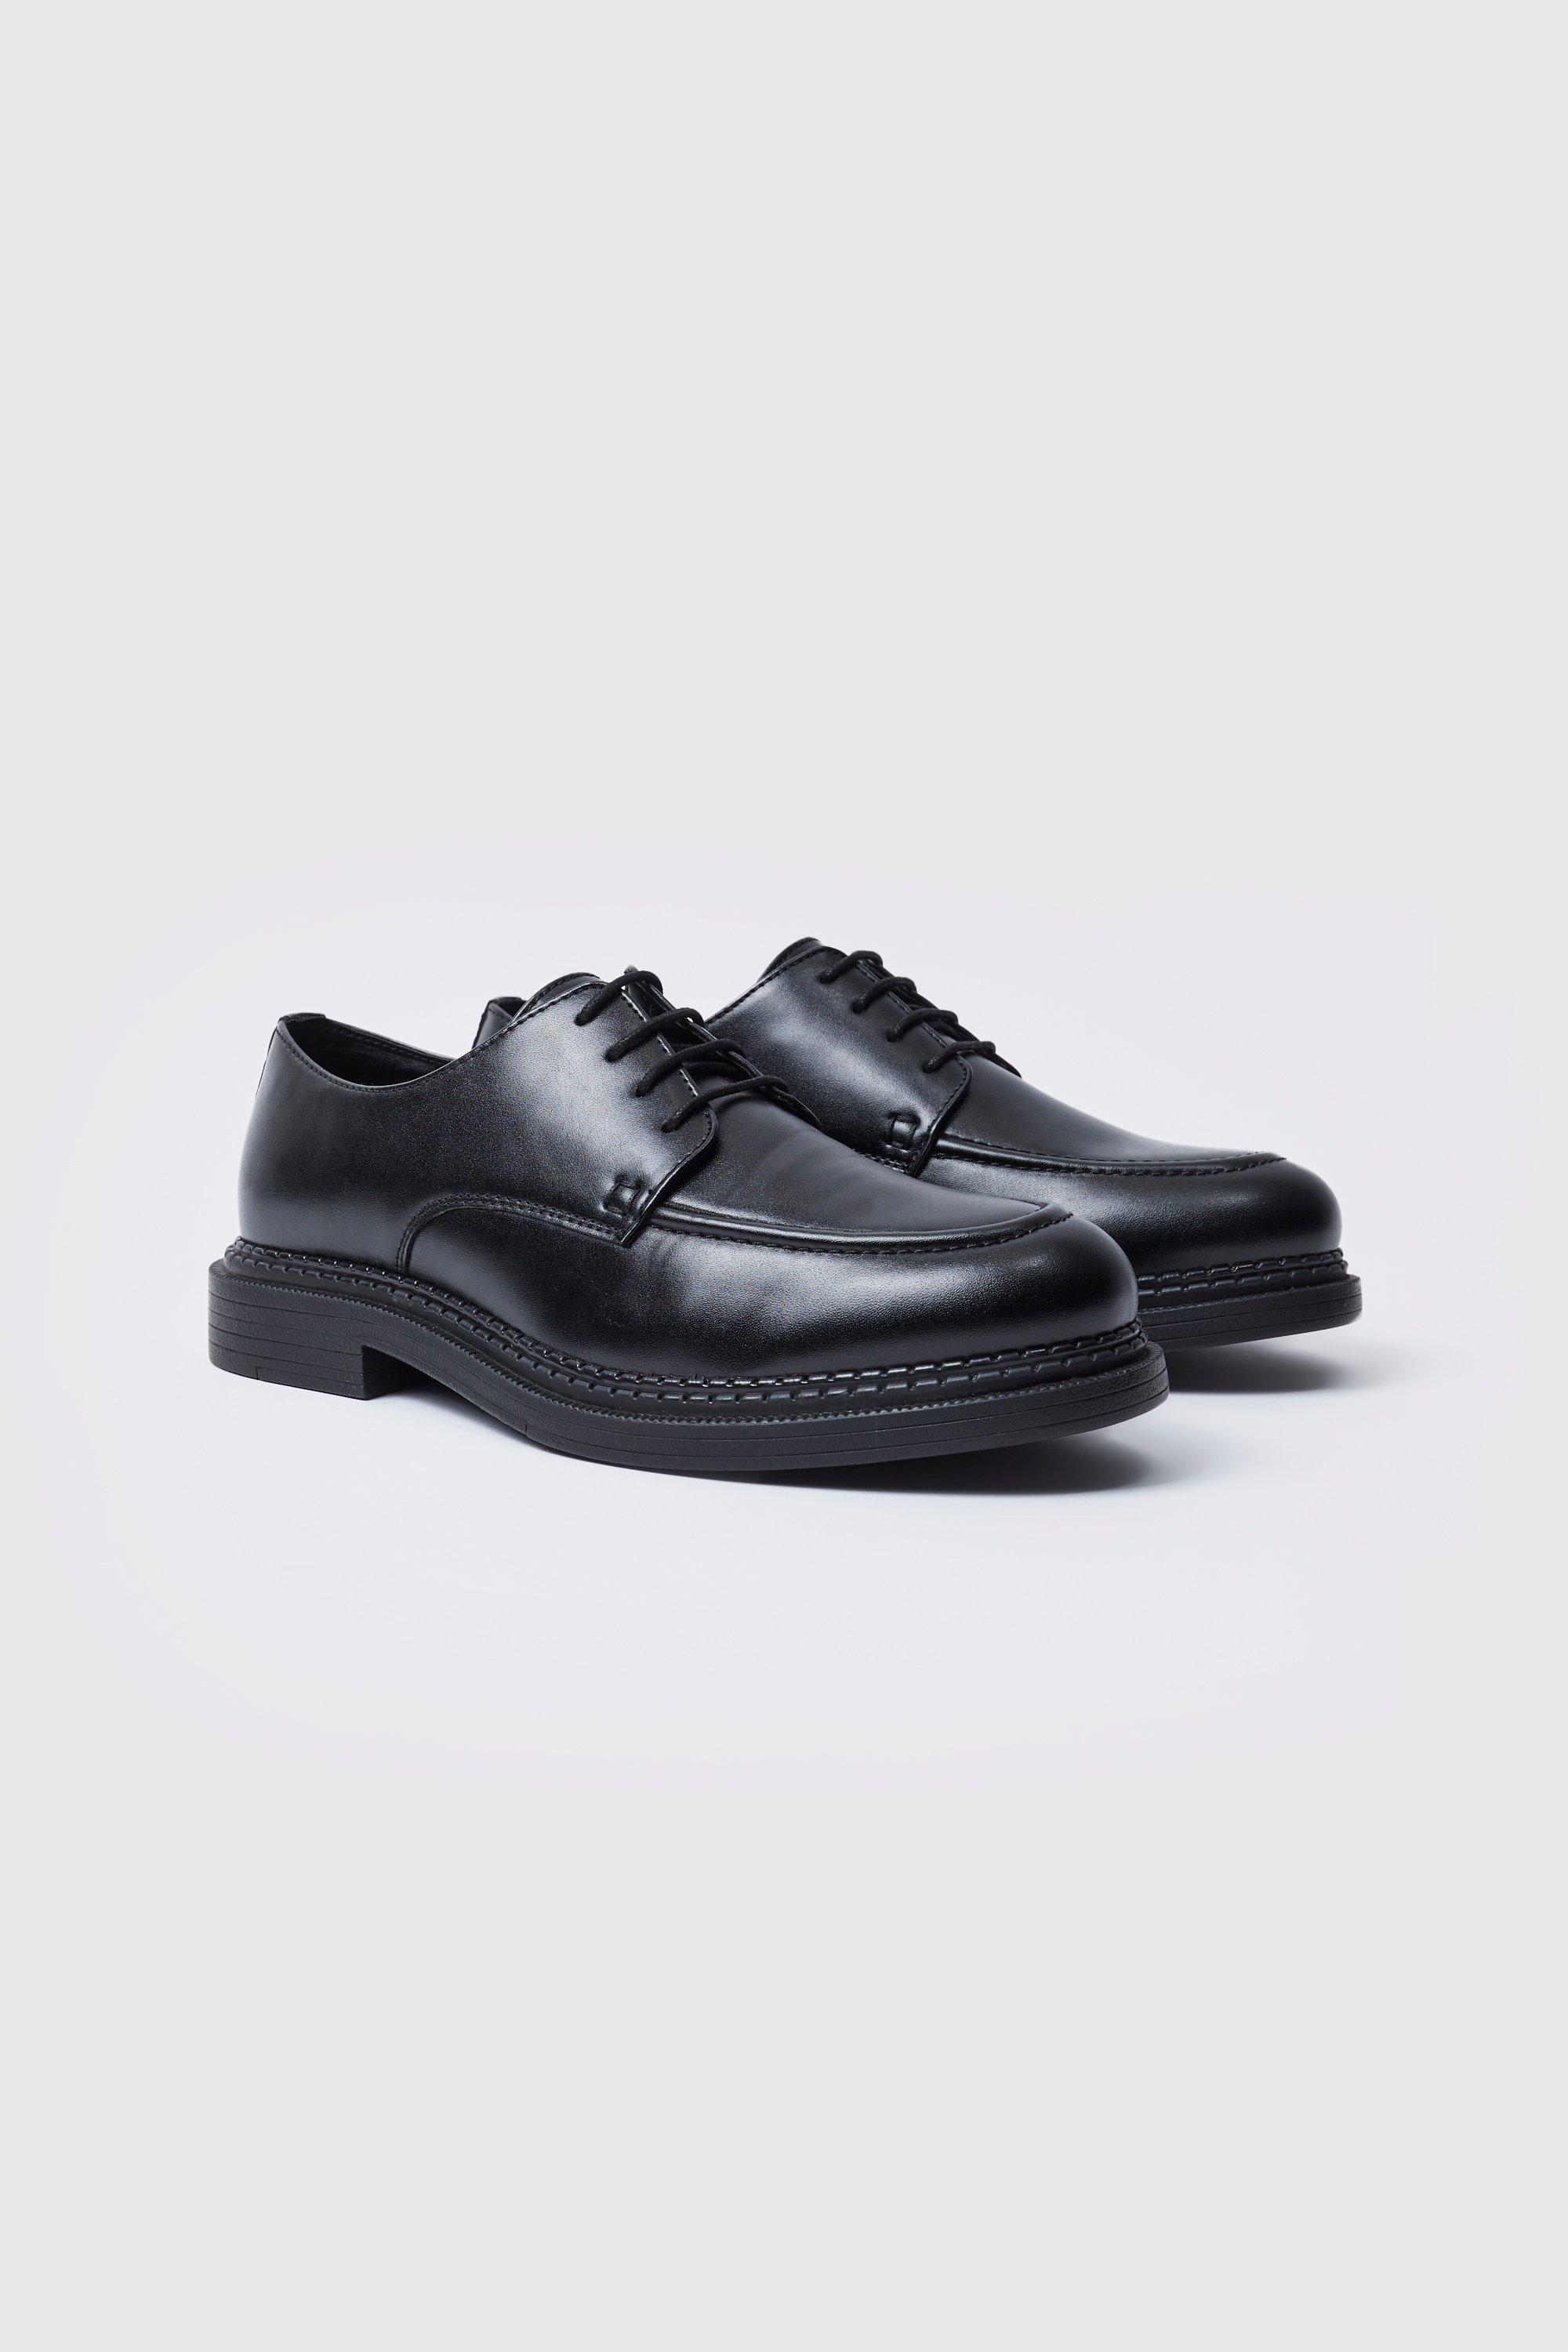 chaussures habillées homme - noir - 43, noir